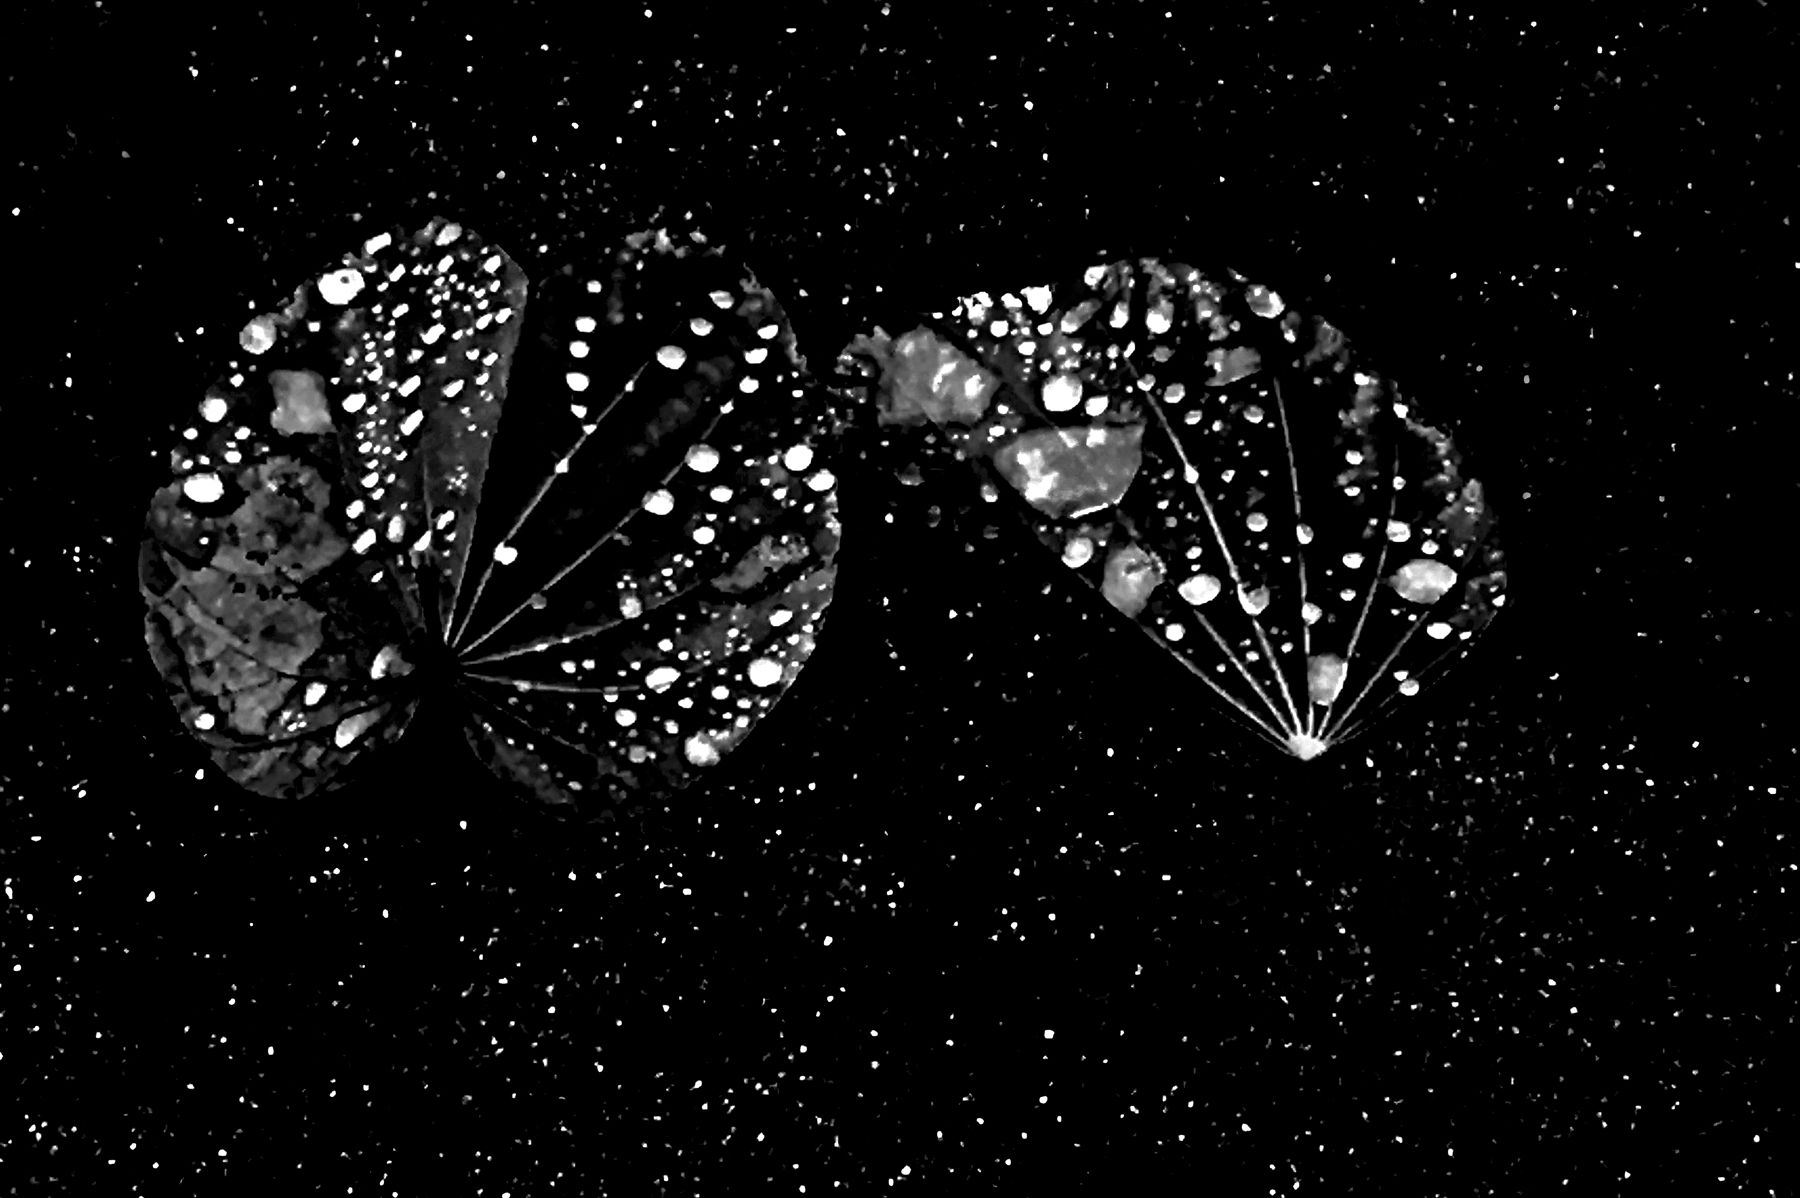 Tiny Immensity #15 - Wet Ginko Leaves On Starry Concrete ©2020 L. Aviva Diamond